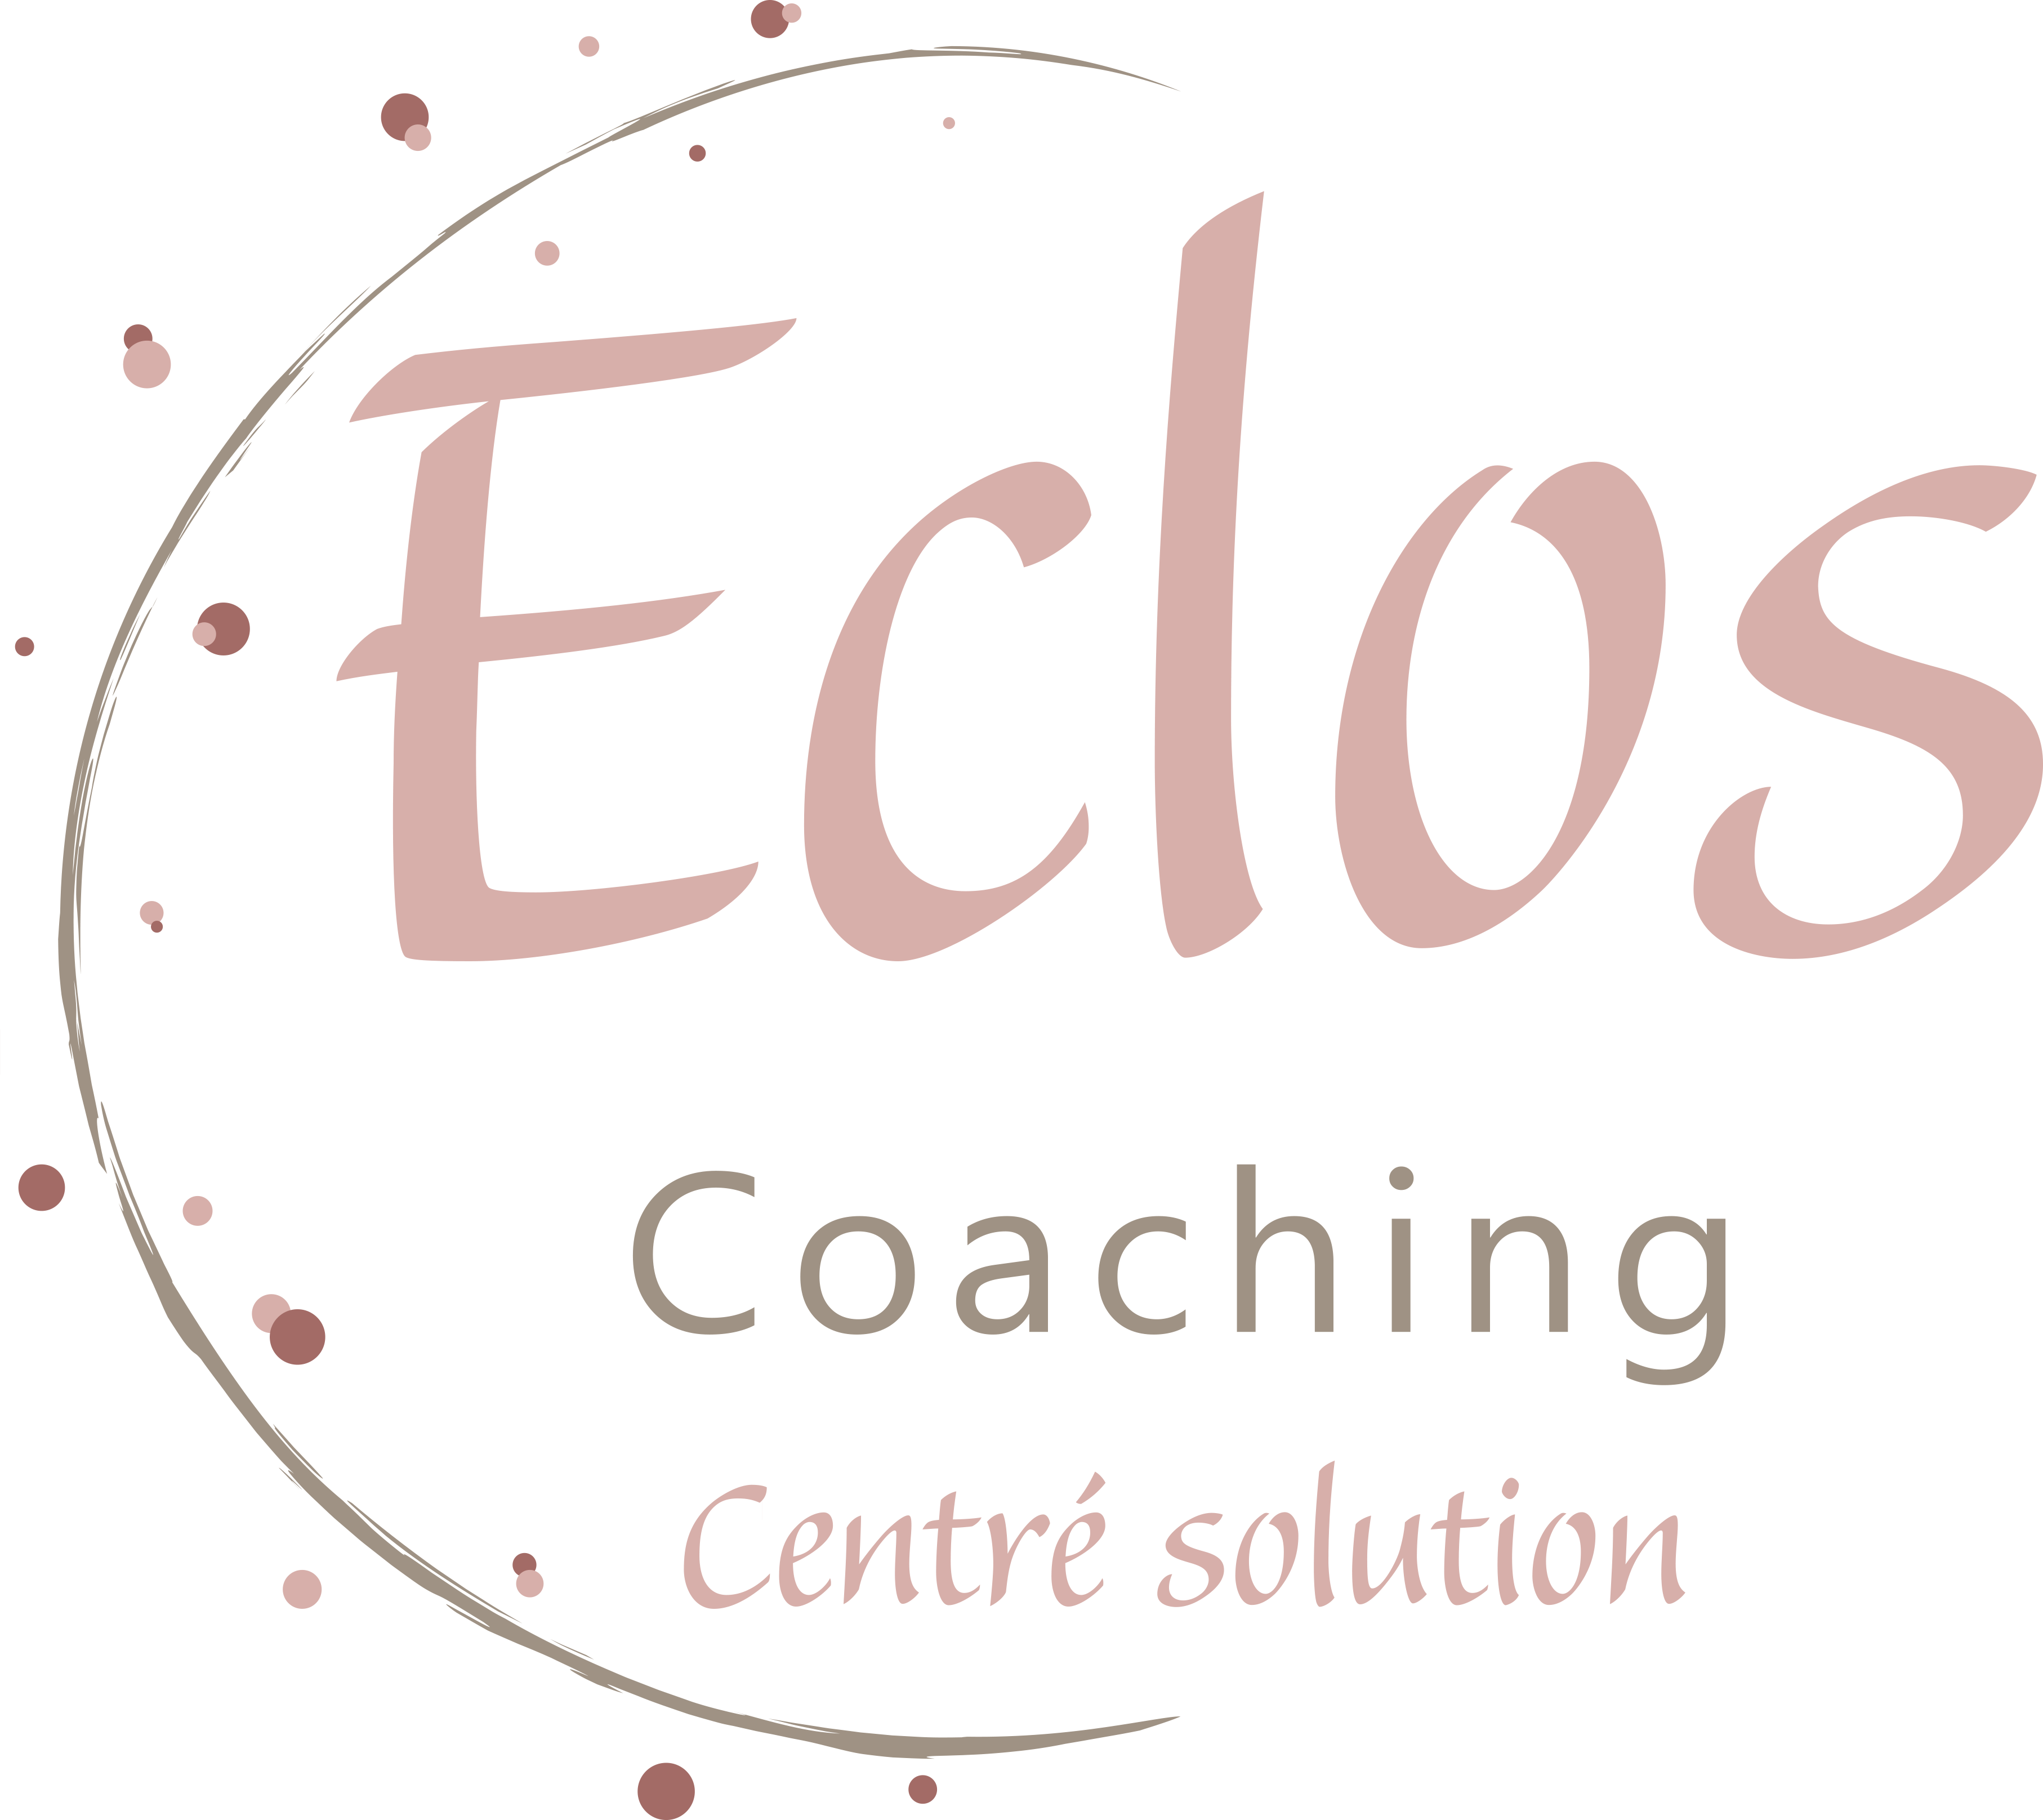 Eclos-Coaching